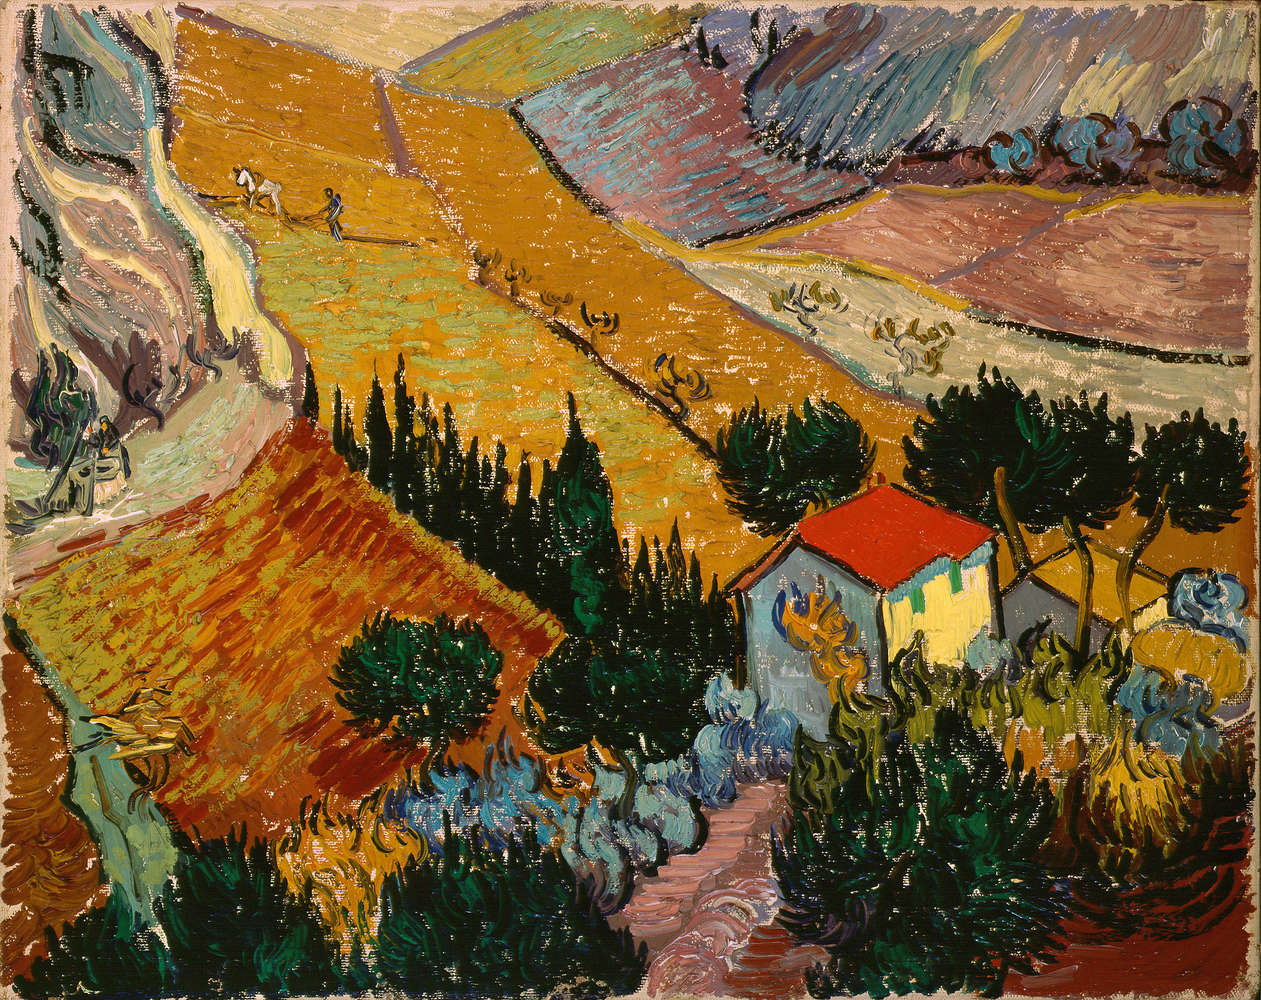             Mural "Paisaje con casa y arador" de Vincent van Gogh
        